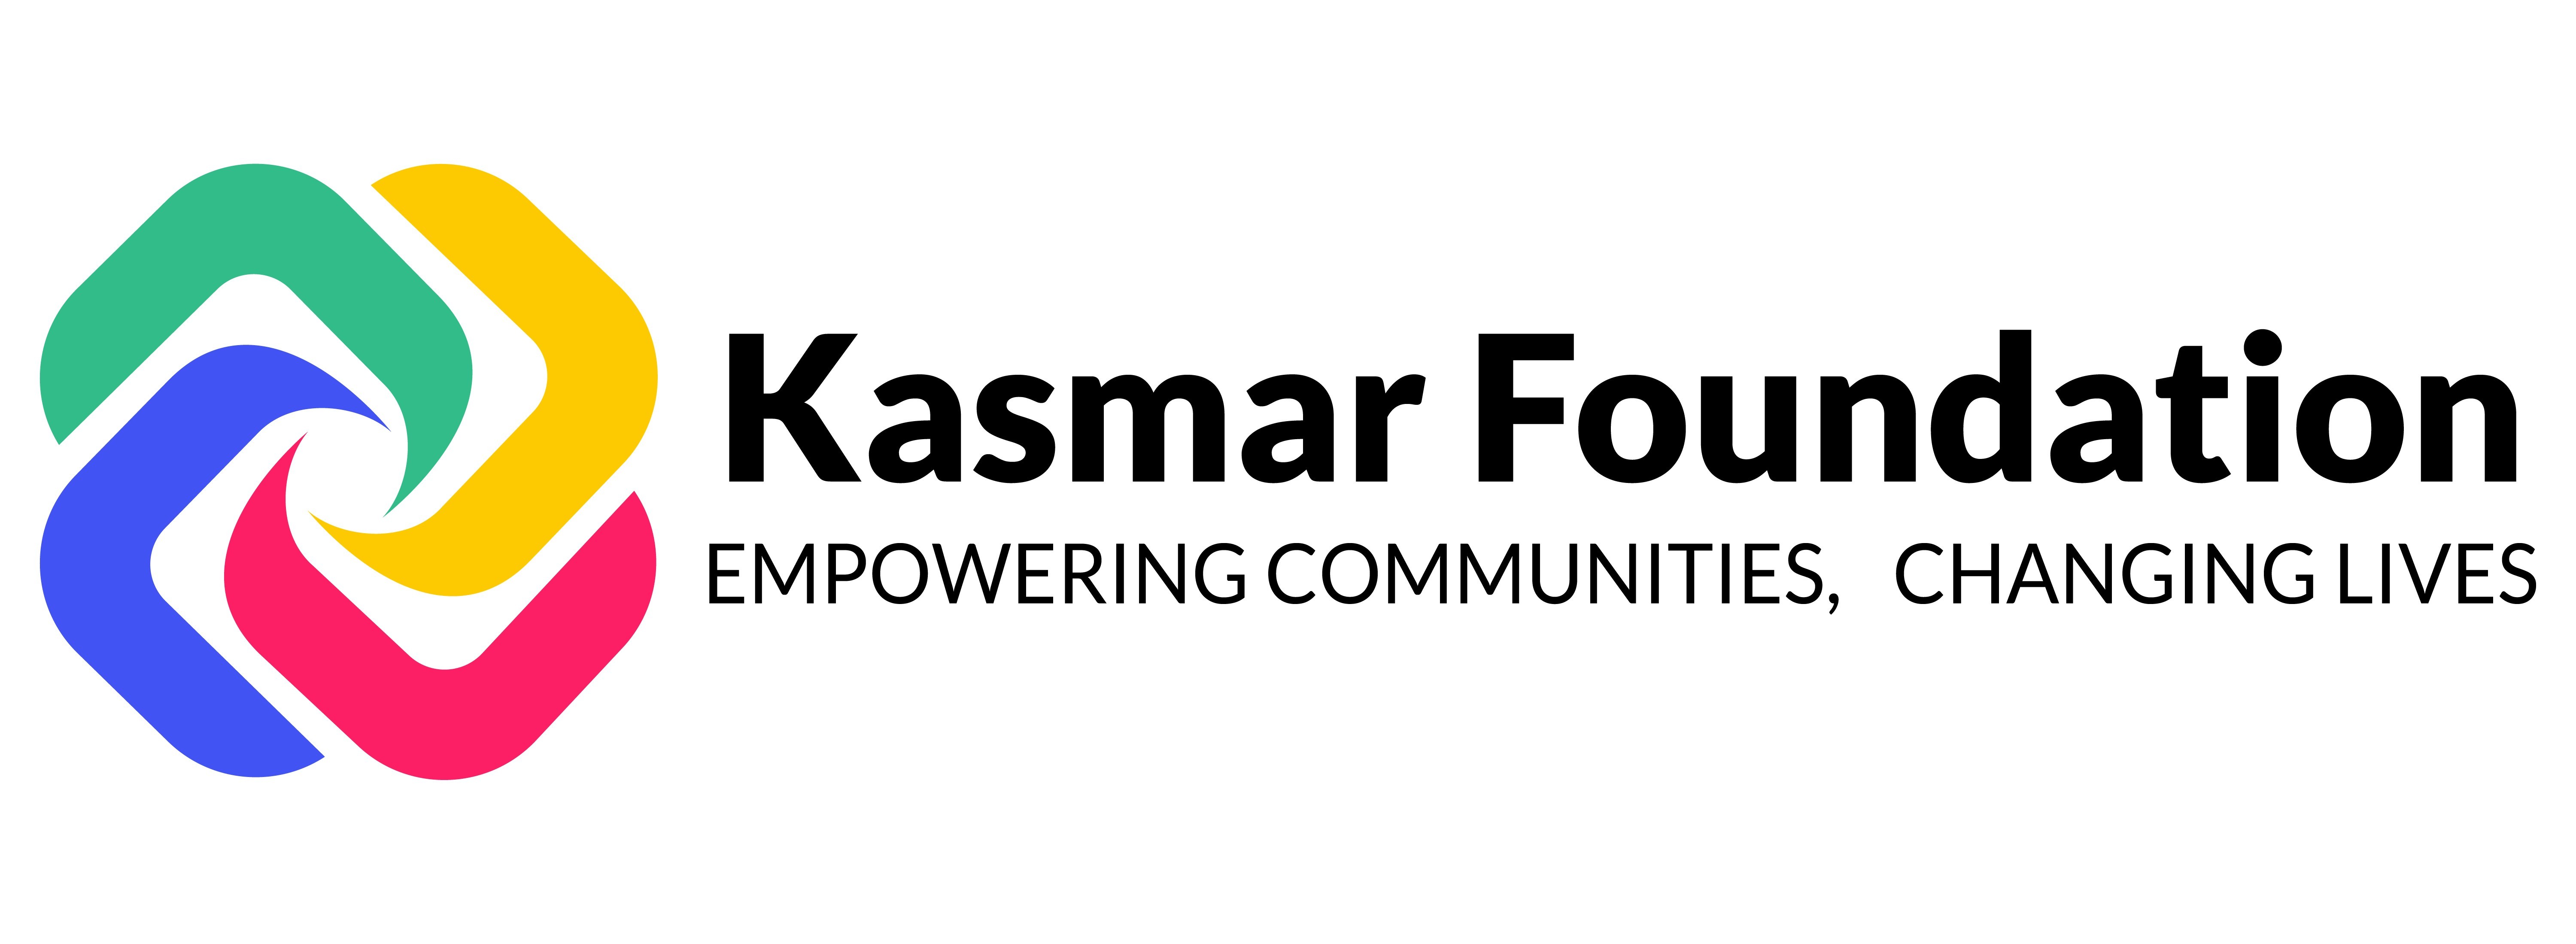 Kasmar Foundation